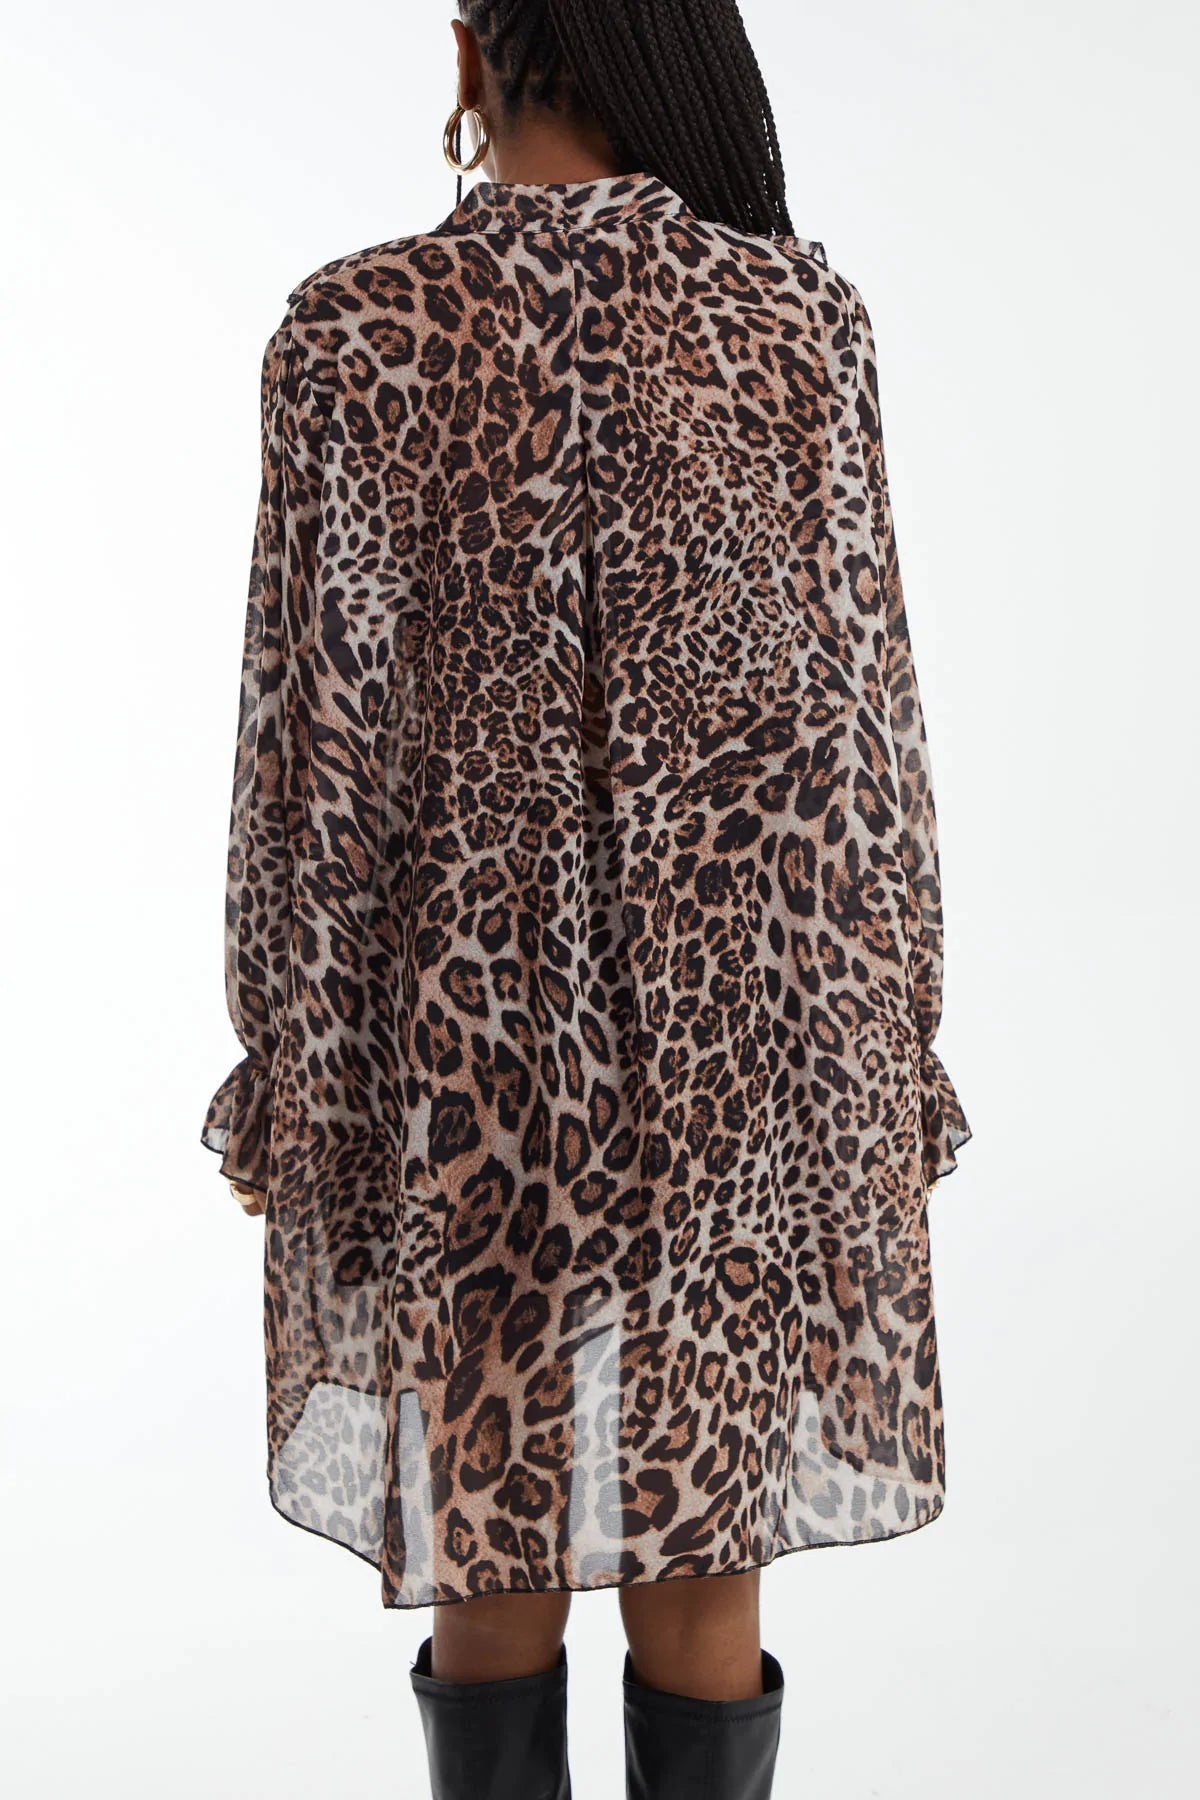 Chiffon Leopard Print Flounce Mini Dress